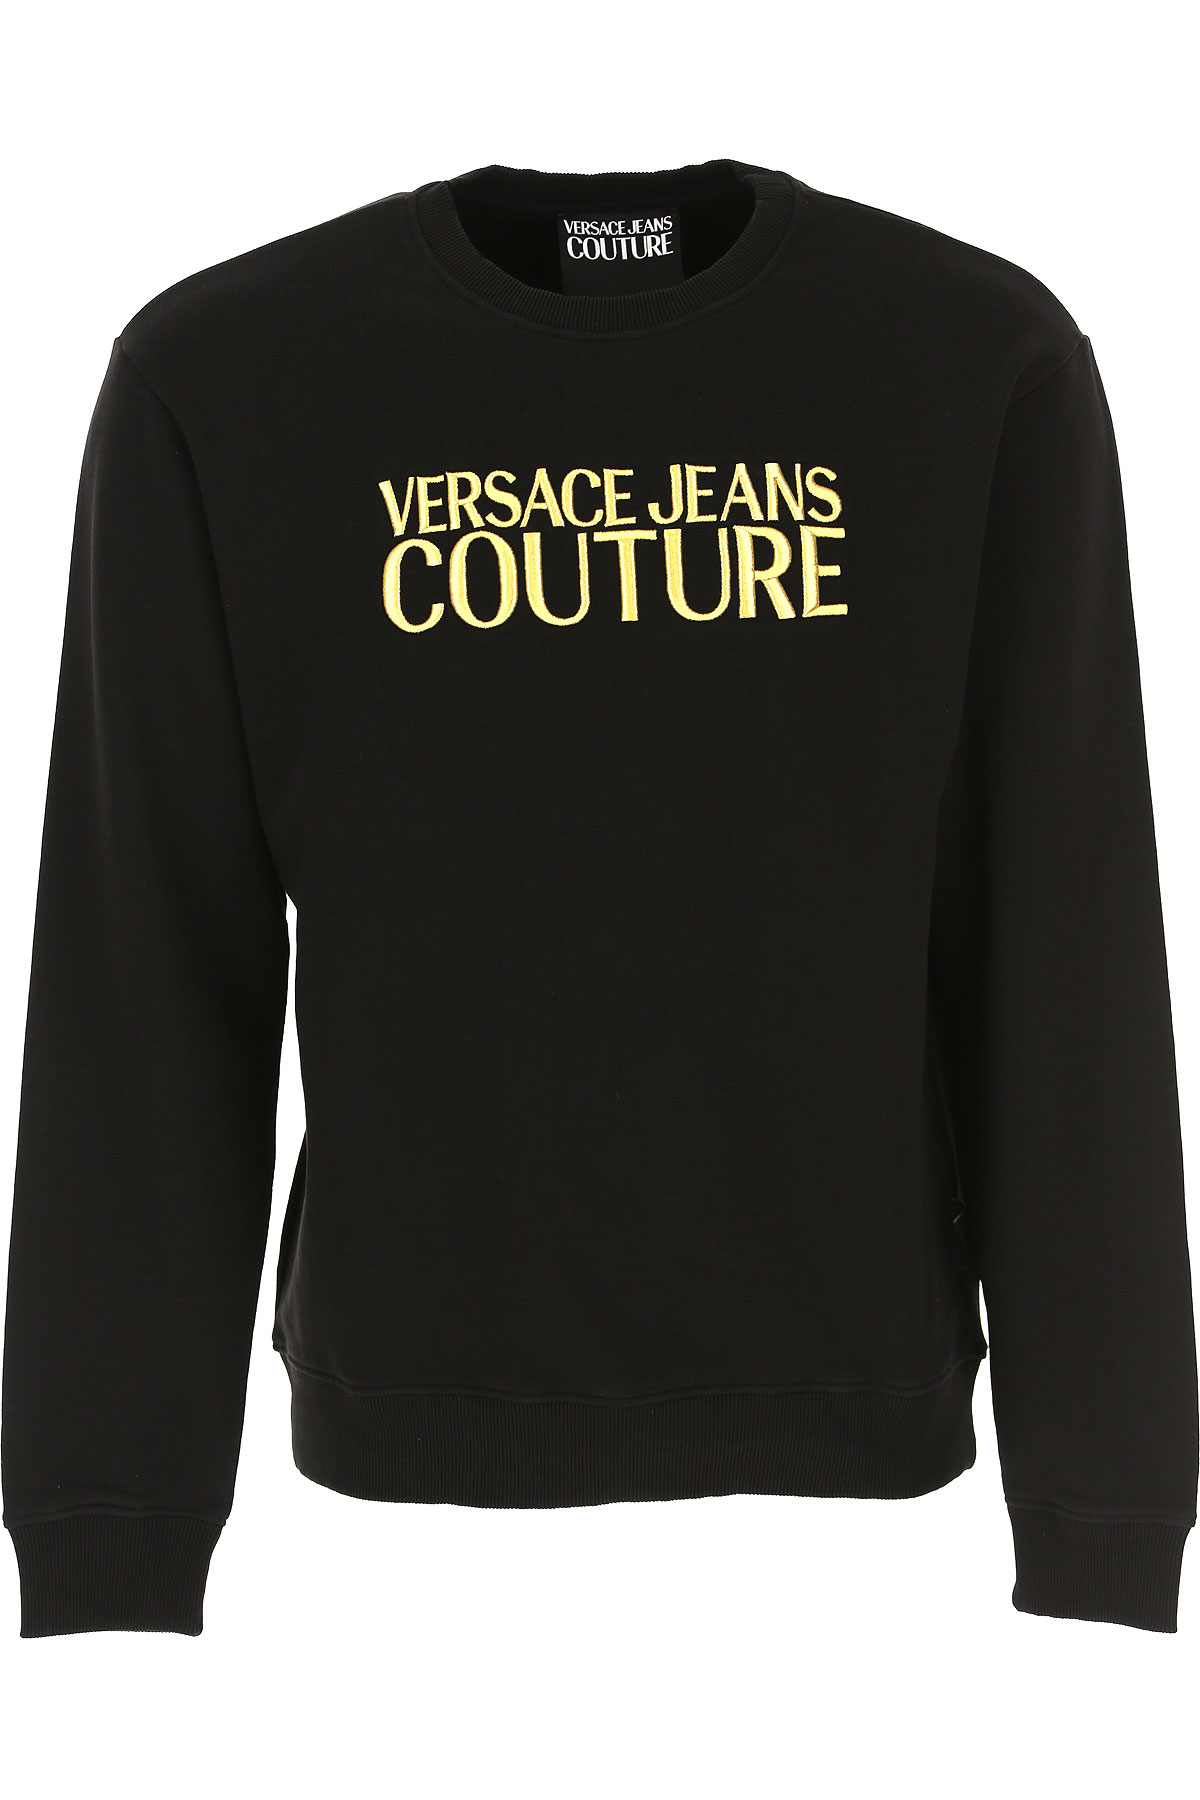 Versace Jeans Couture Sweatshirt für Herren, Kapuzenpulli, Hoodie, Sweats Günstig im Sale, Schwarz, Baumwolle, 2017, L S XL XS